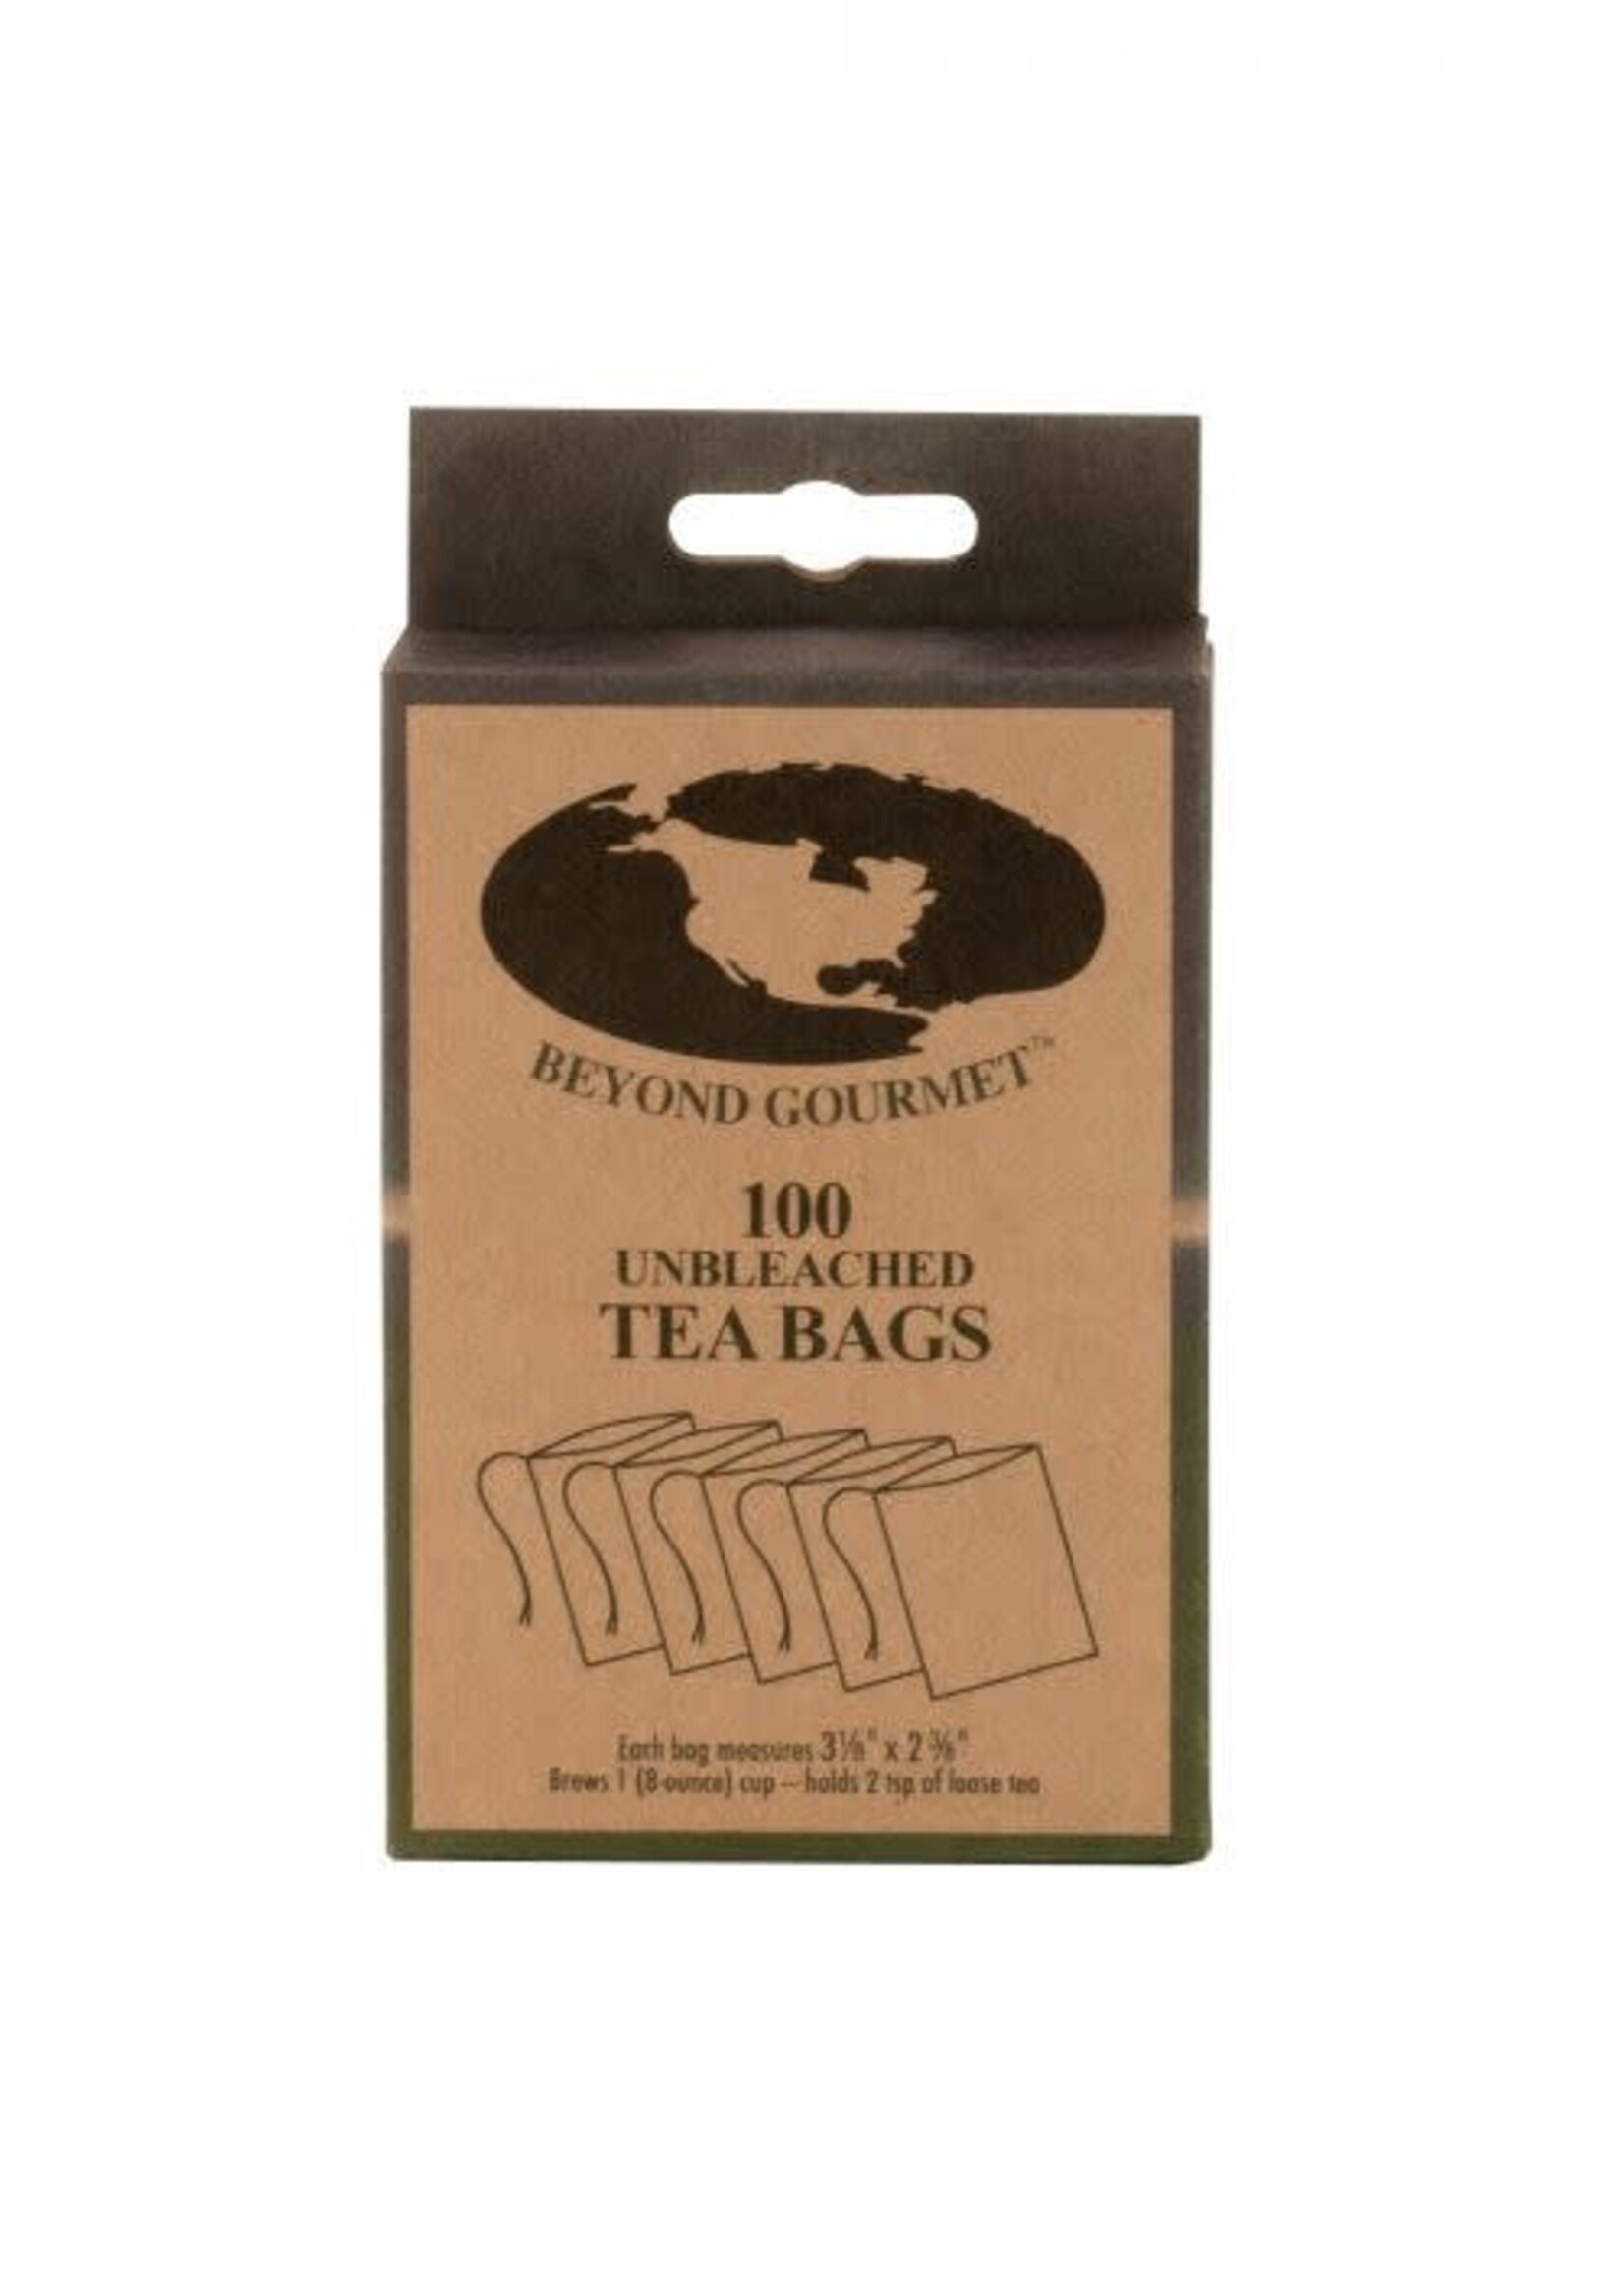 Beyond Gourmet Unbleached Tea Bags 1c s/100